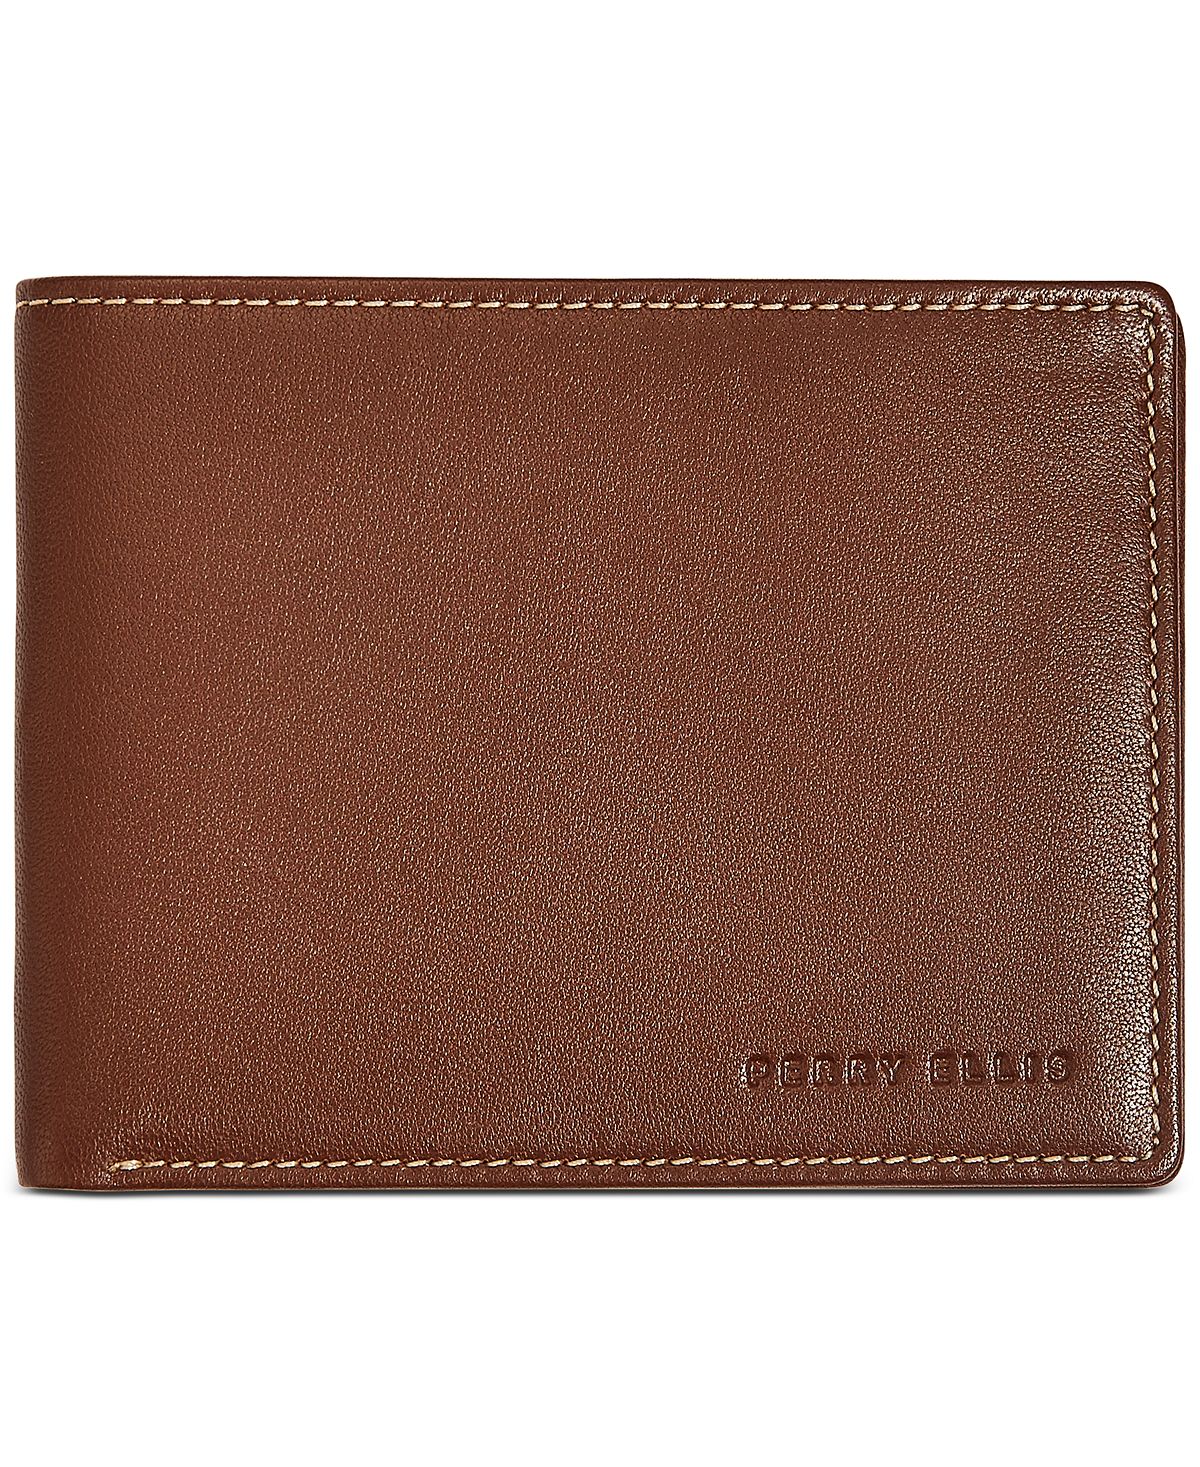 Perry Ellis Portfolio Perry Ellis Leather Wallet Luggage